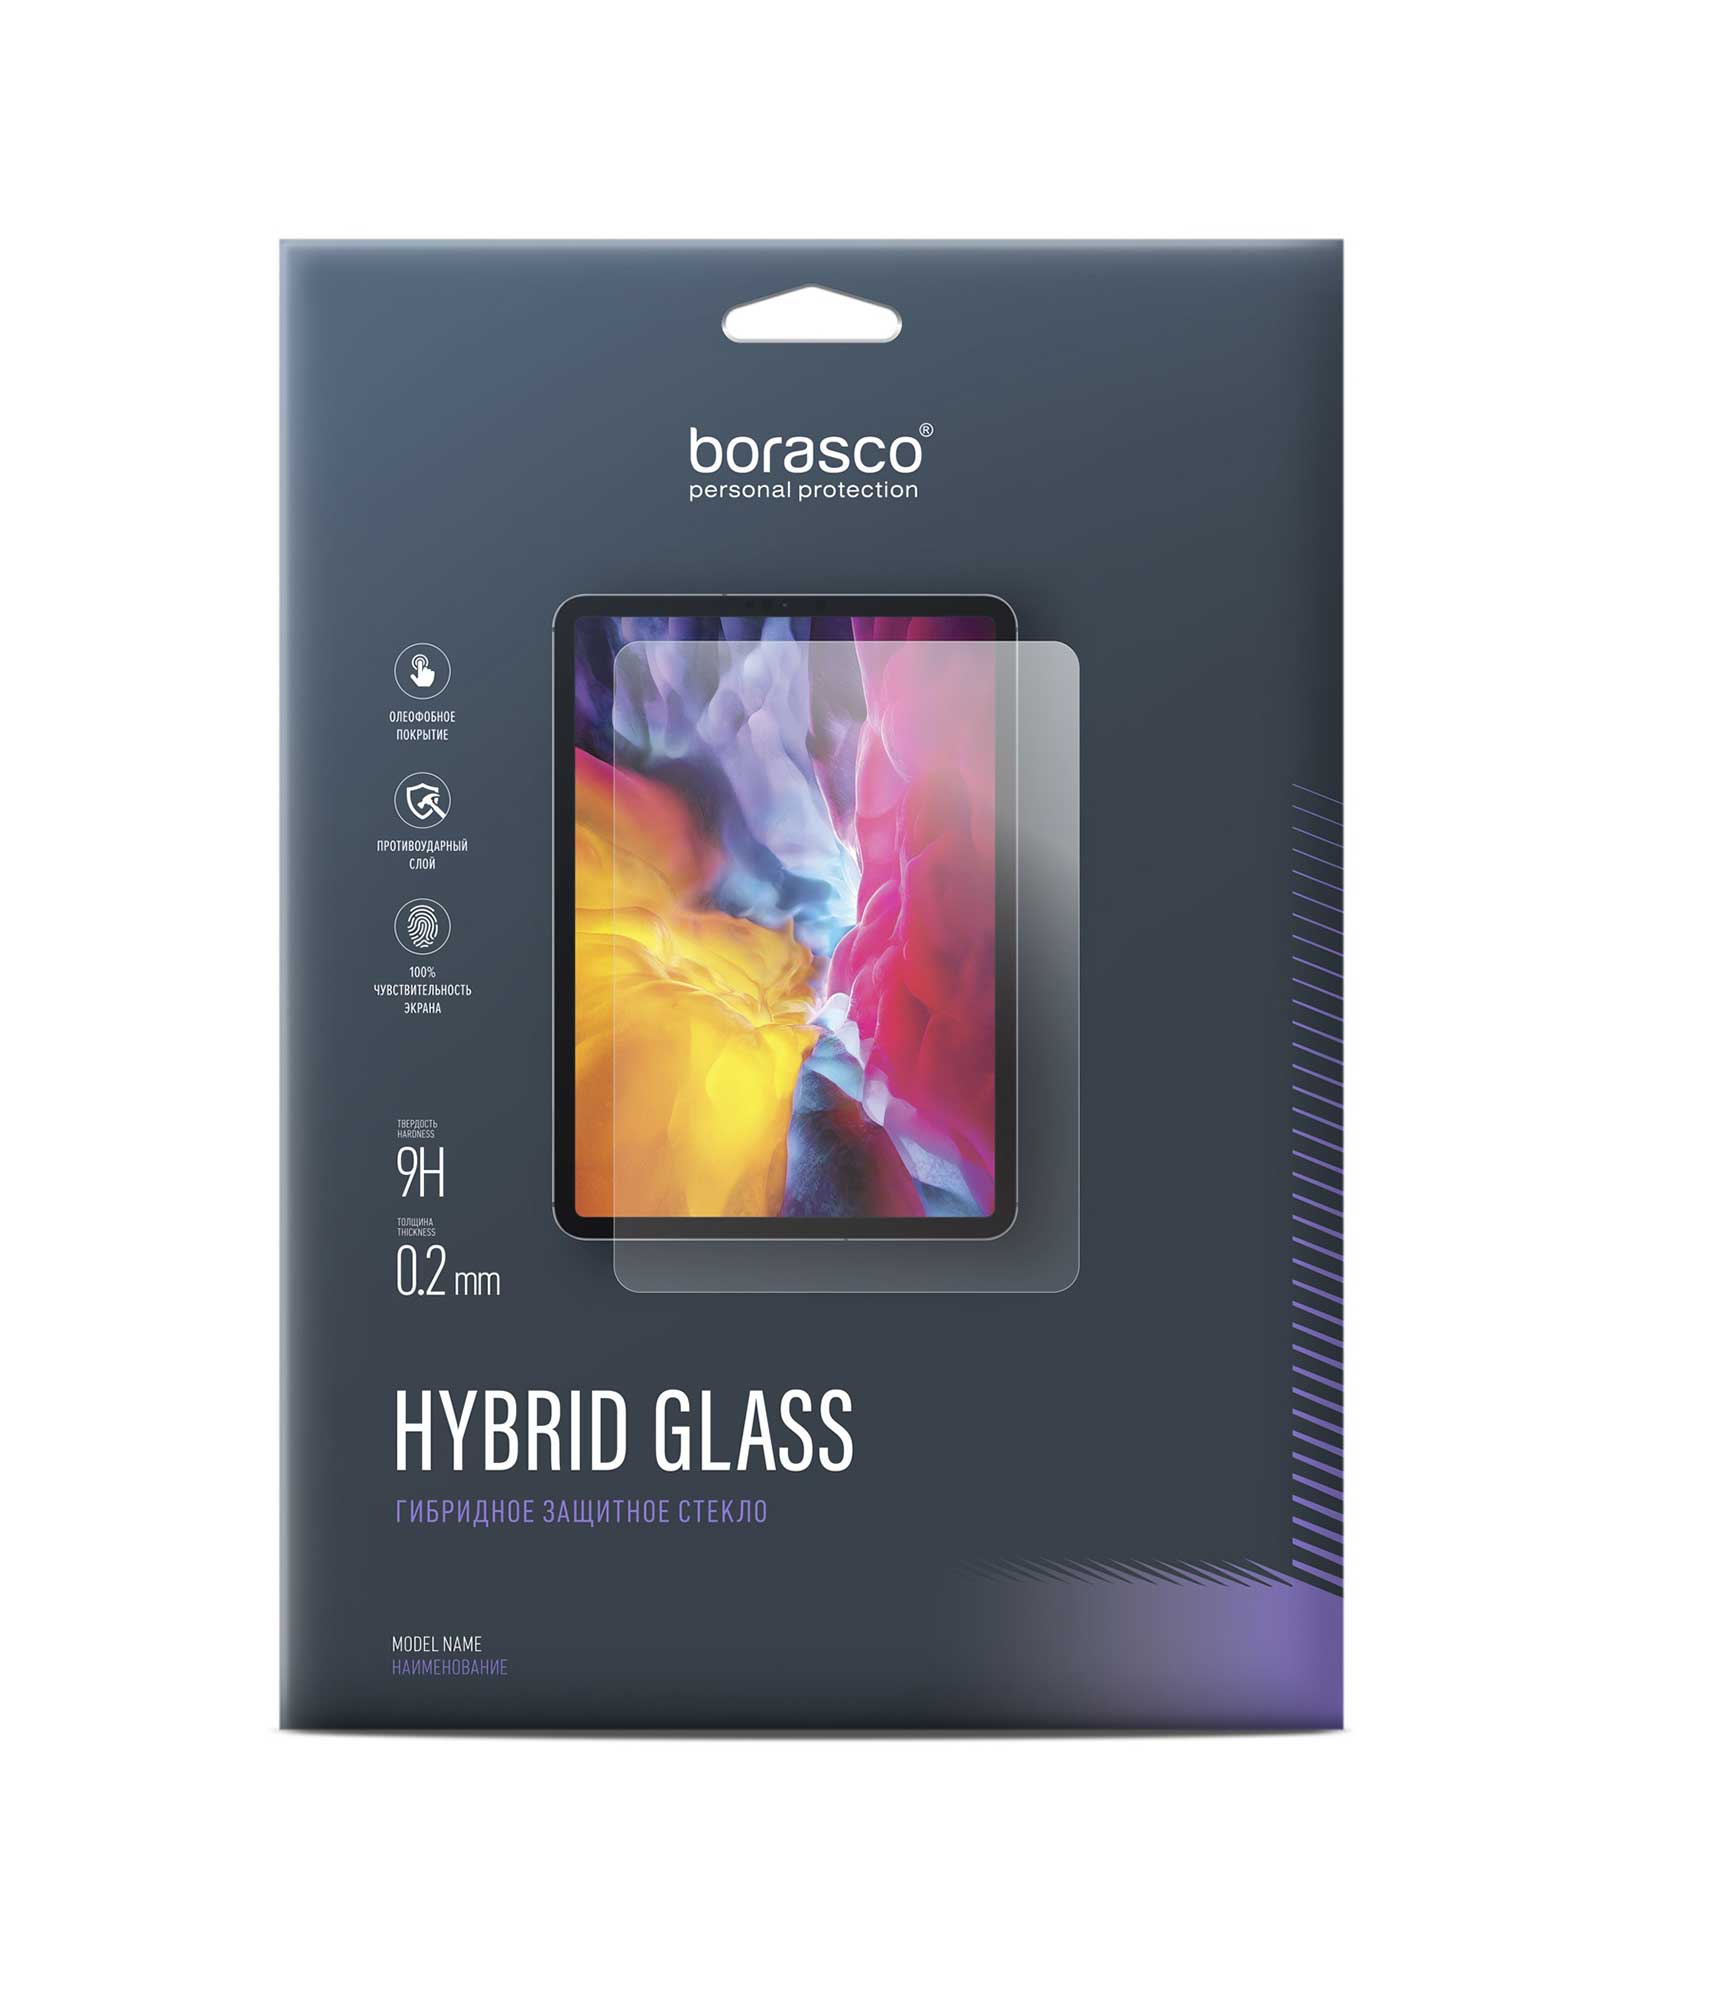 Защитное стекло Hybrid Glass для Lenovo Tab M10 TB-X306X/ TB-X306F закаленное защитное стекло для lenovo tab m10 plus тб 125f 128f 2 шт упаковка